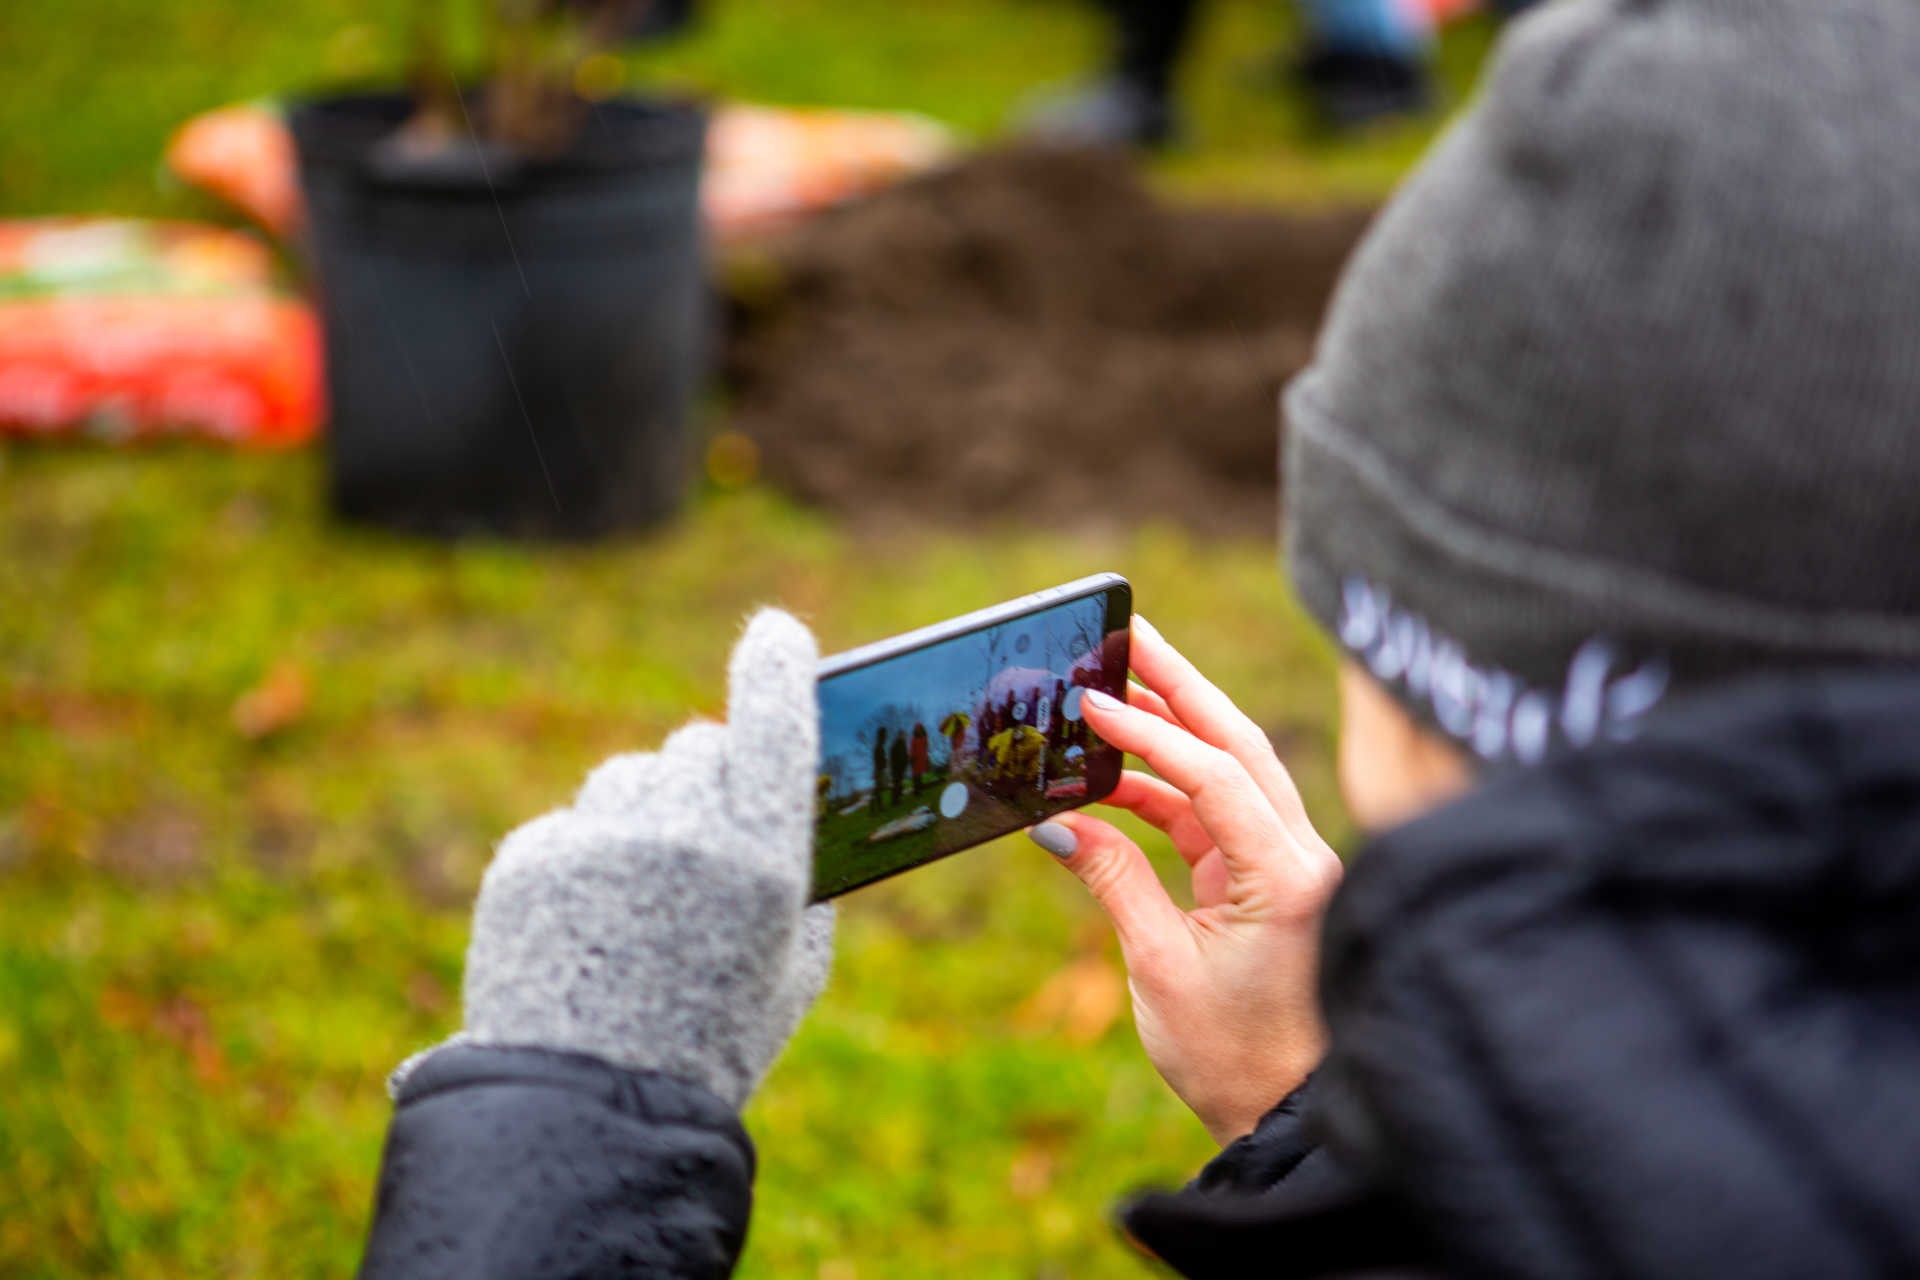 Une personne portant des gants prend une photo d'un événement de plantation d'arbres à l'aide d'un smartphone.